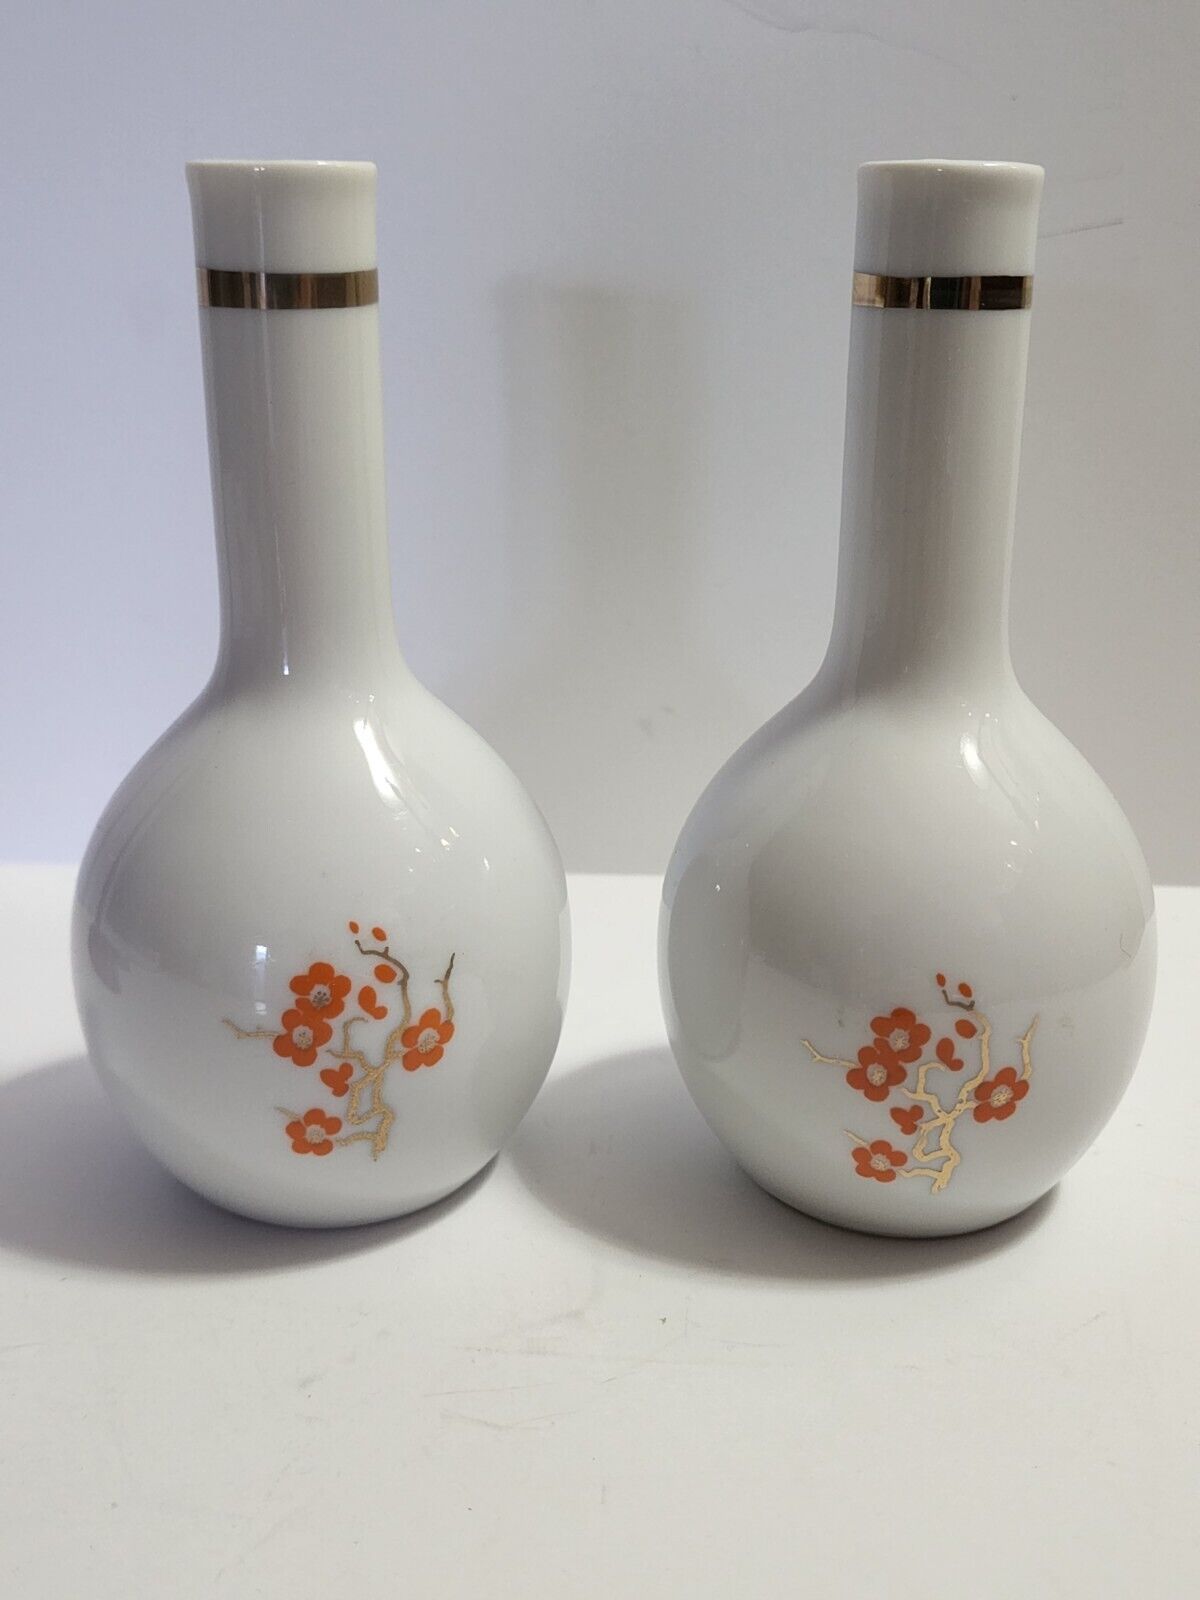 Mikasa Porcelain Bud Vases SET OF 2 Vintage Pretty Floral 5.75 In Vtg Home Decor